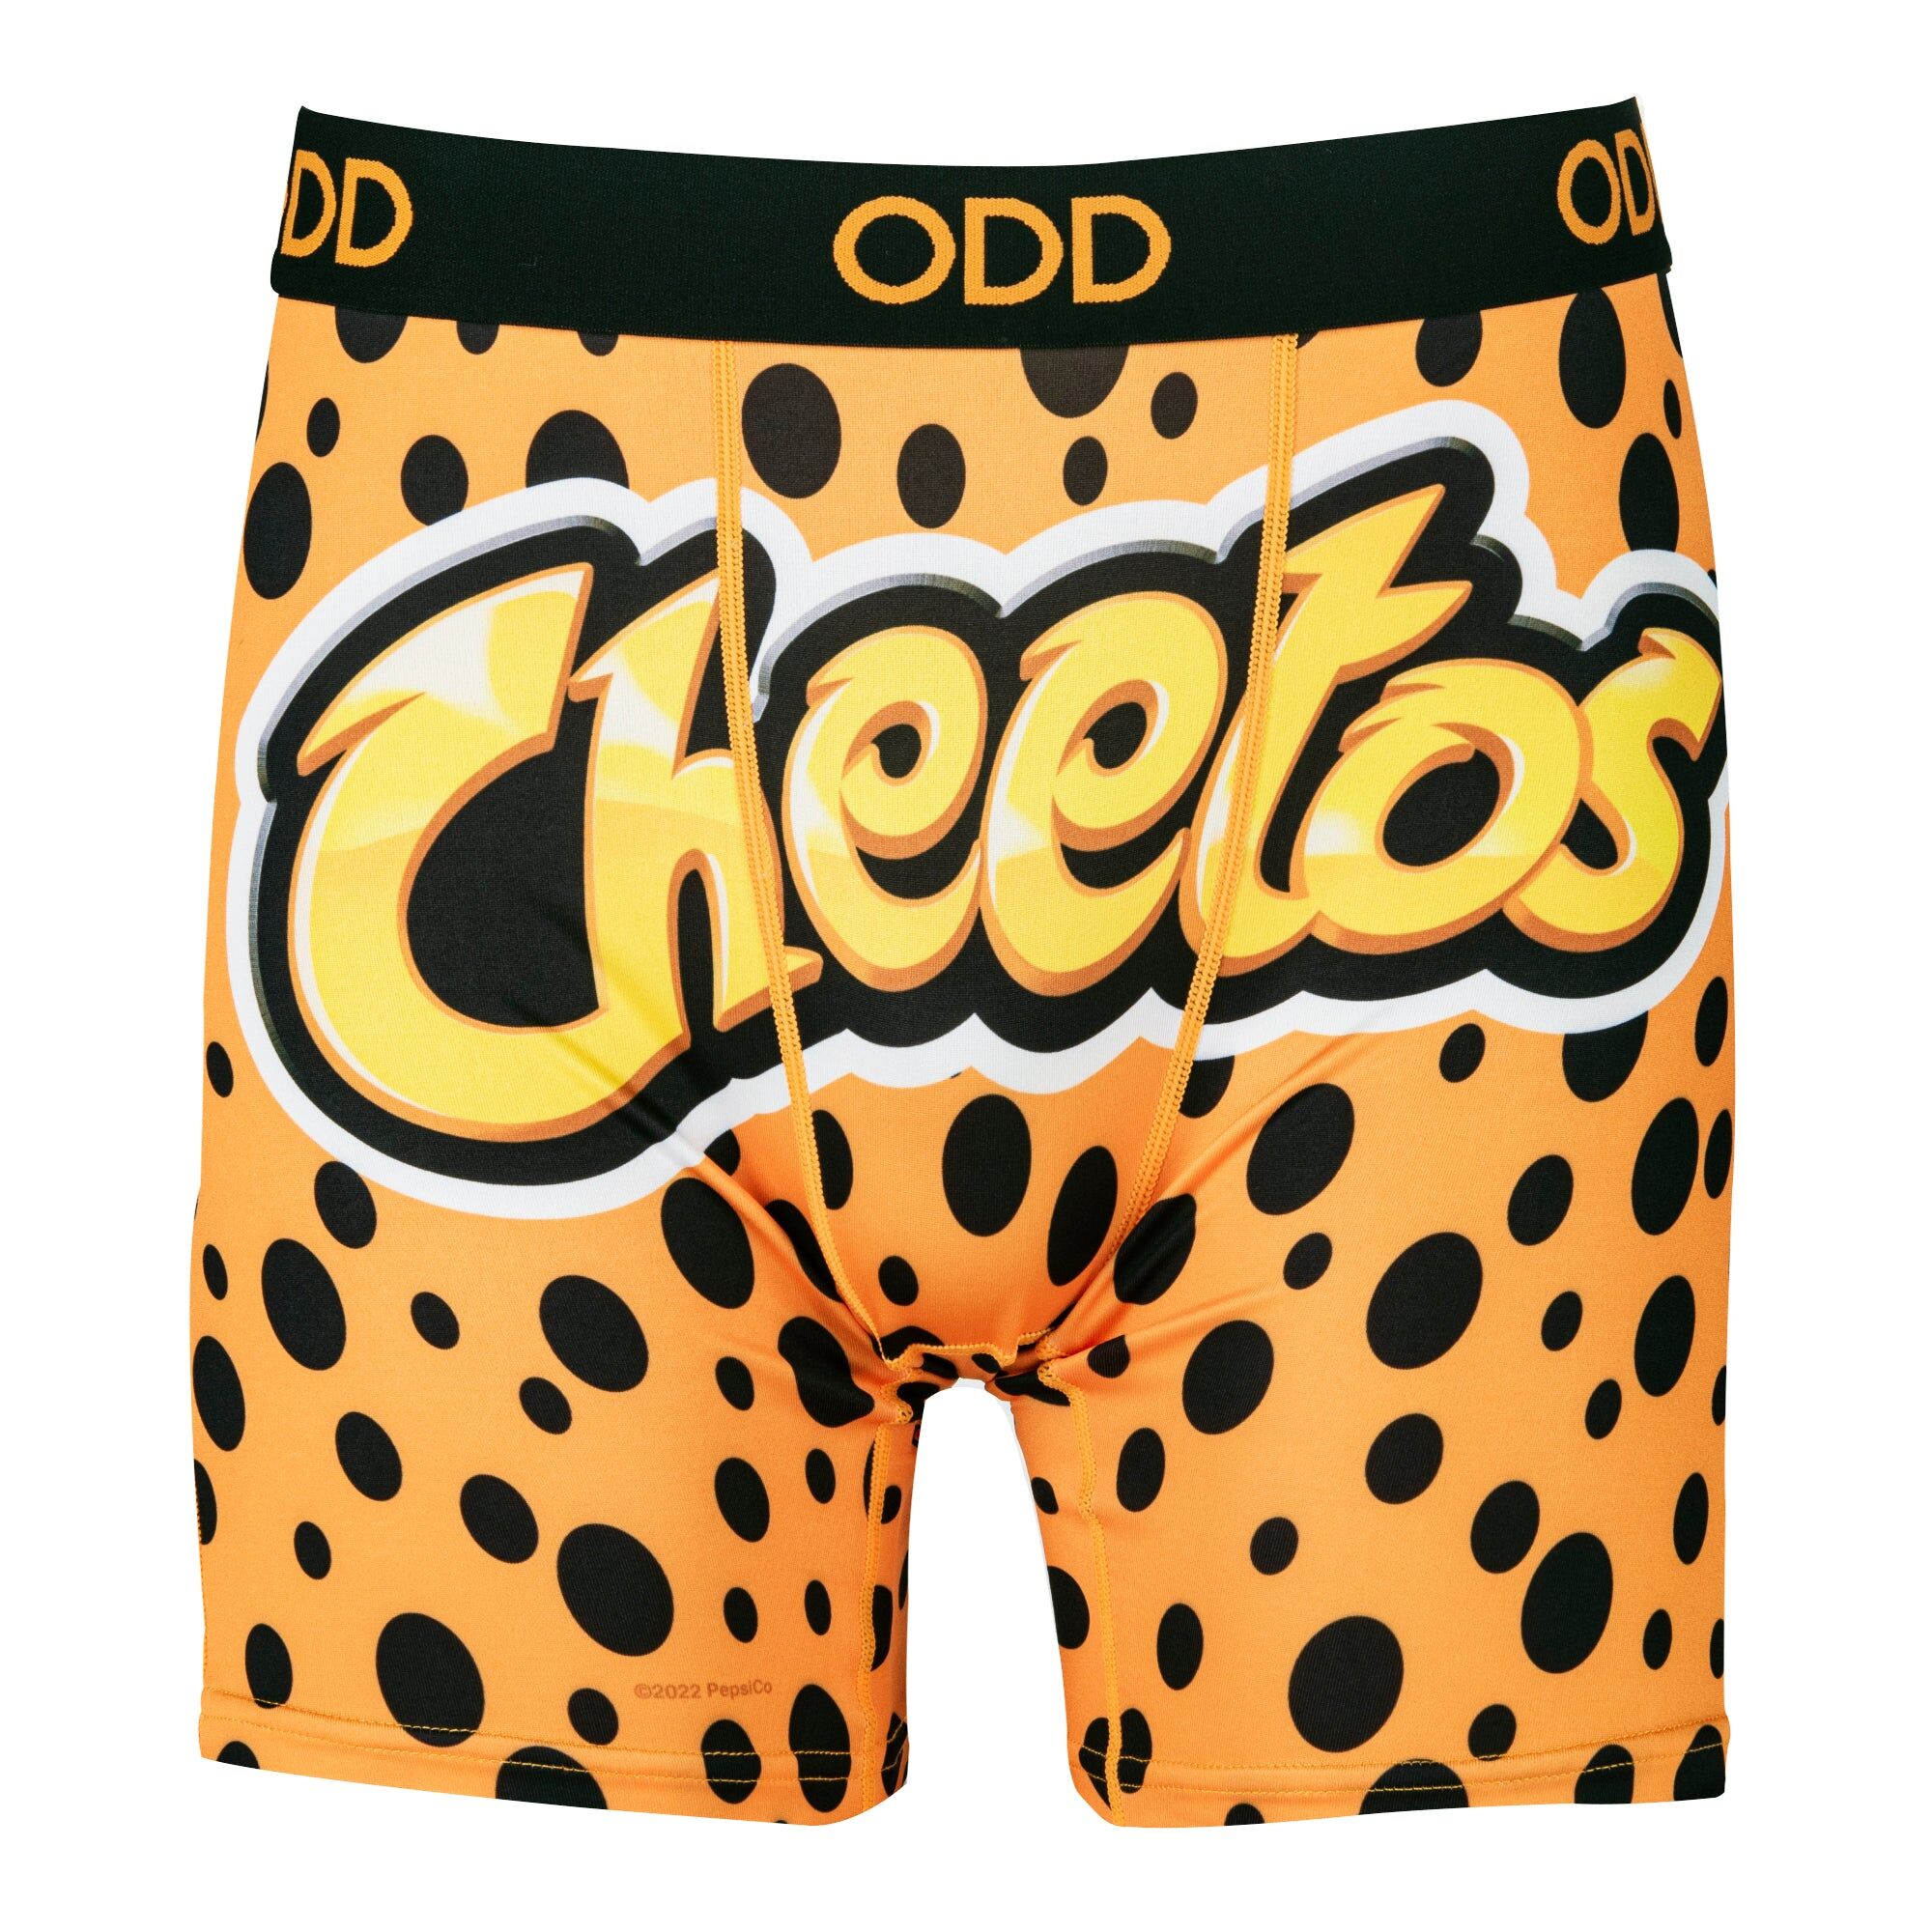 Sleefs Cheetos Men's Underwear